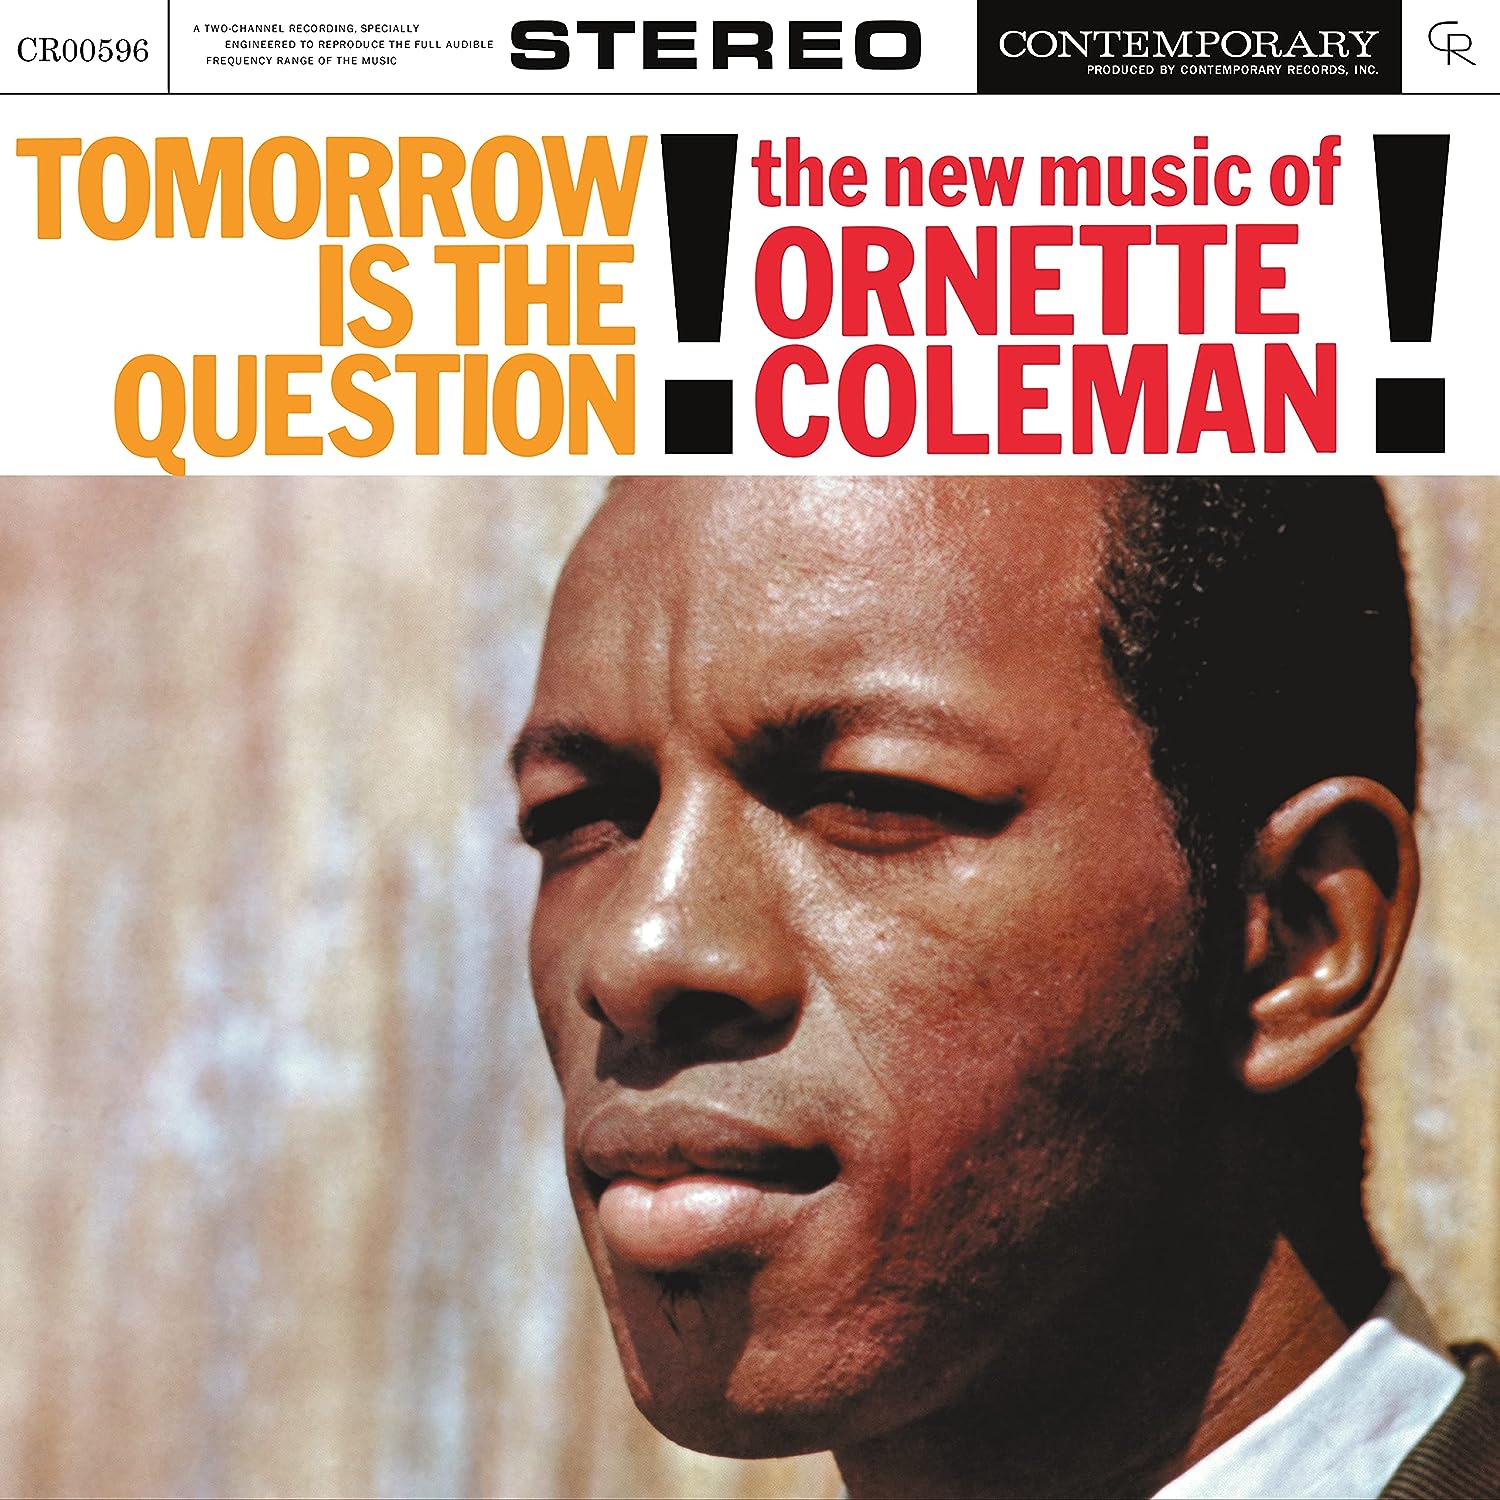 Джаз Universal (Aus) Ornette Coleman - Tomorrow Is The Question (Acoustic Sounds) (Black Vinyl LP) джаз verve us john coltrane quartet crescent acoustic sounds